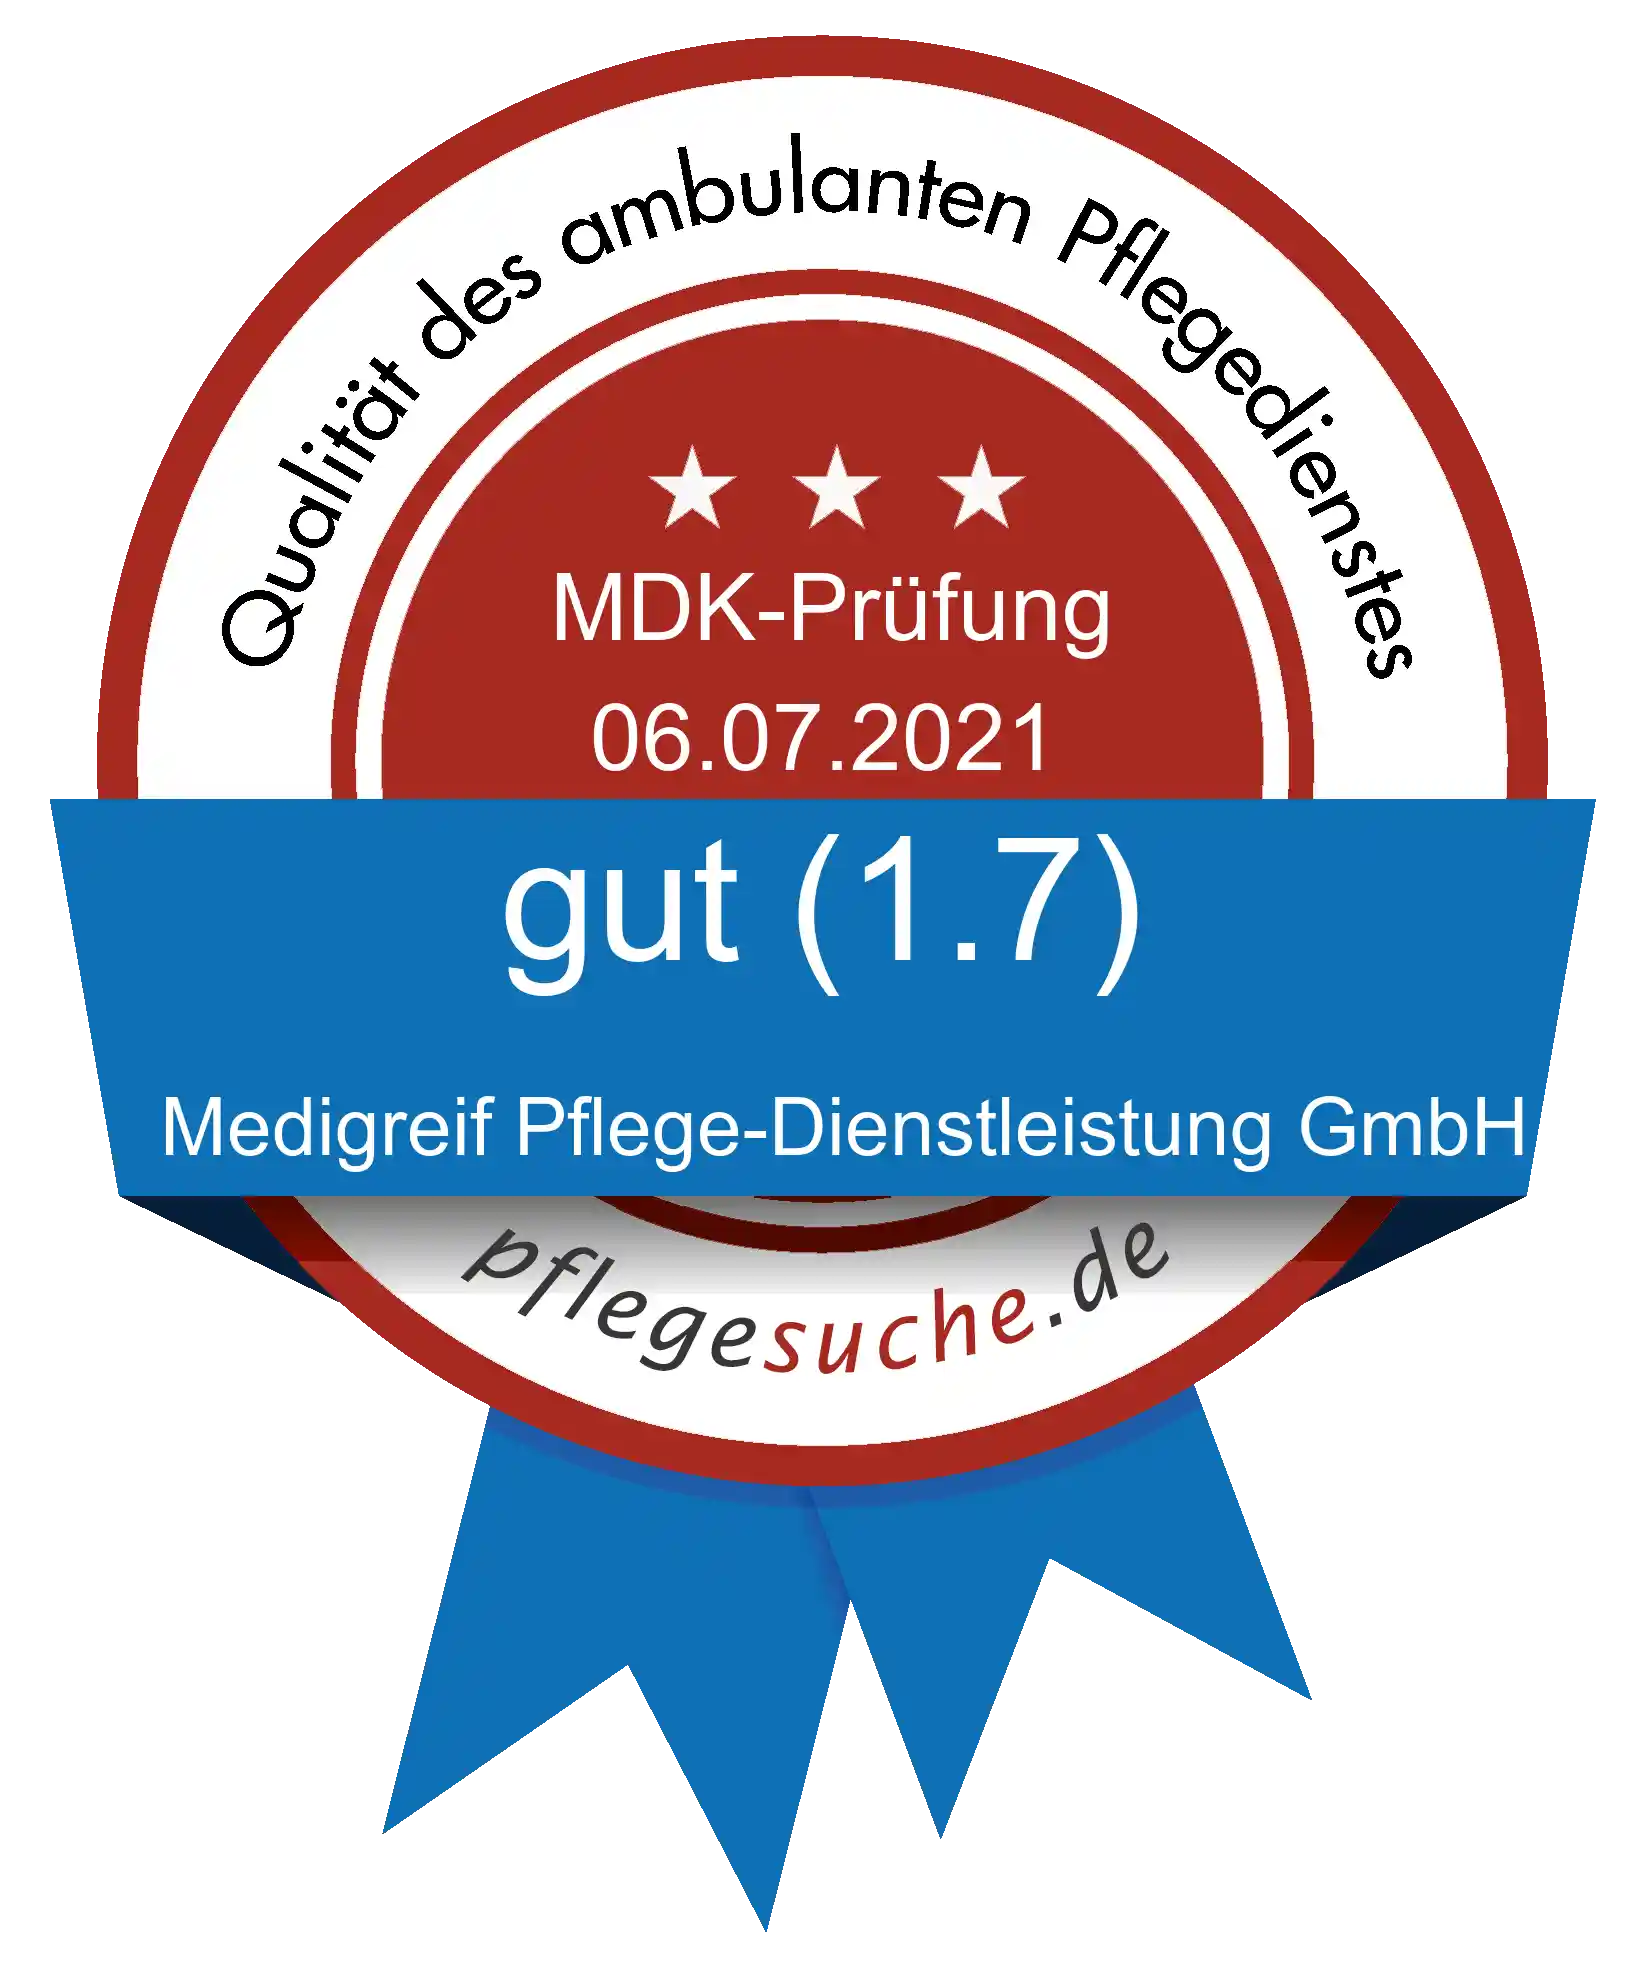 Siegel Benotung: Medigreif Pflege-Dienstleistung GmbH